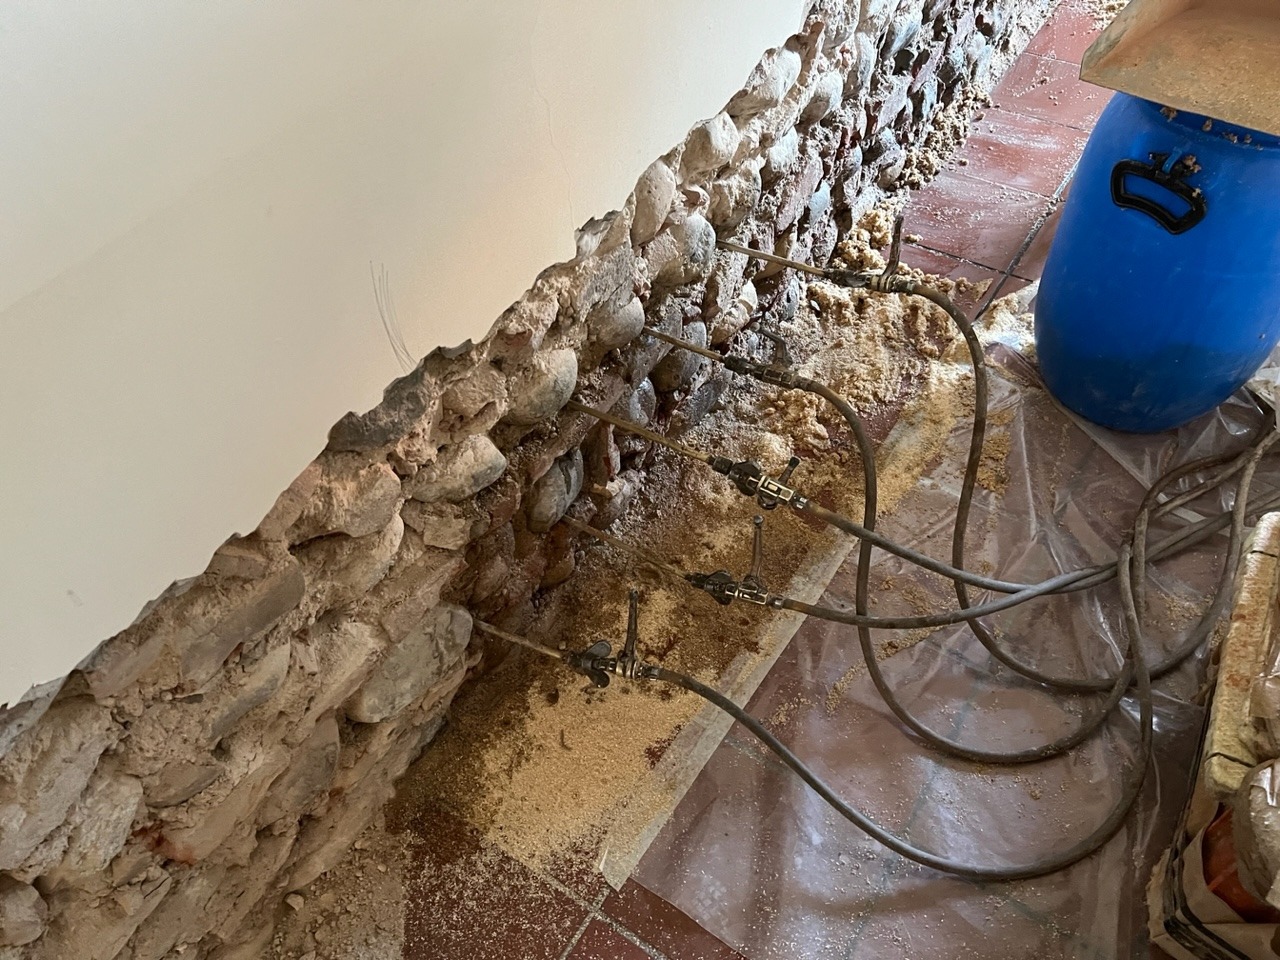 Risanamento definitivo da umidità di risalita presso cascina privata a Verona con garanzia scritta decennale